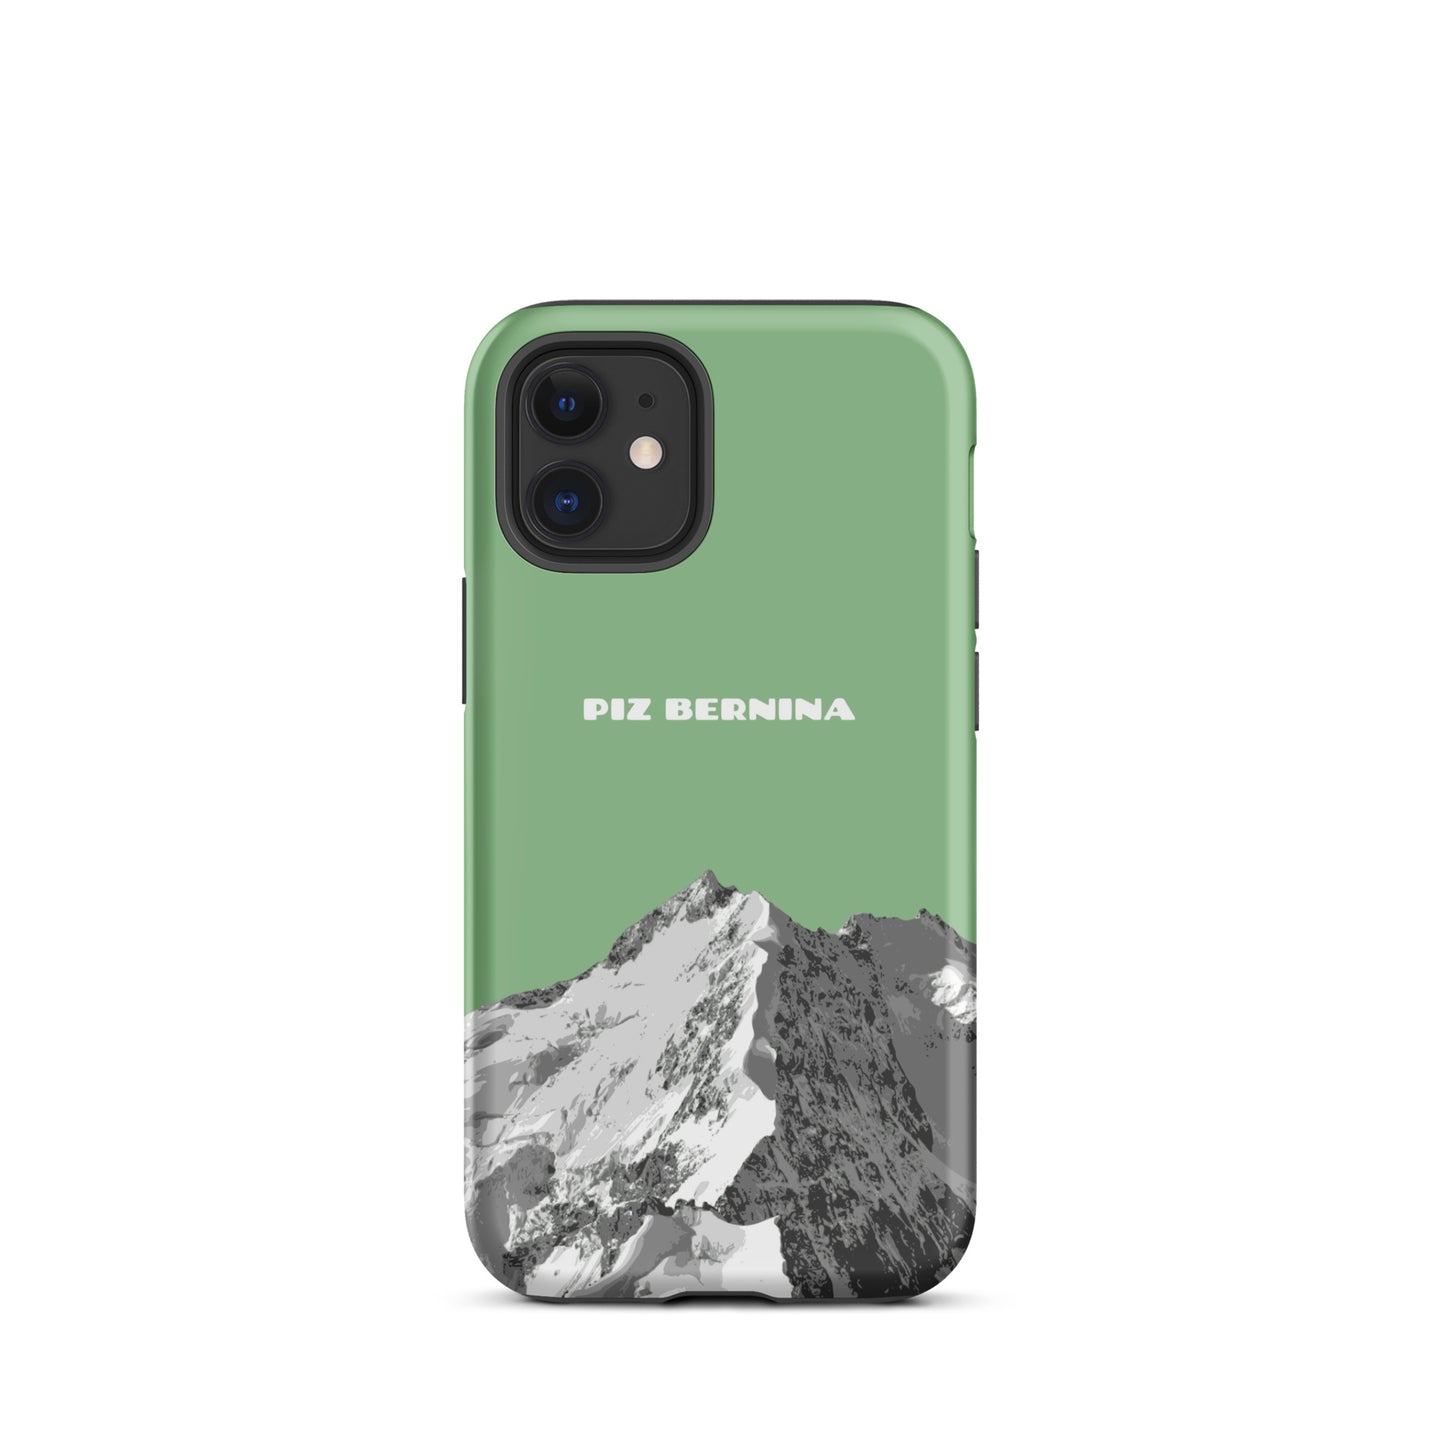 Hülle für das iPhone 12 Mini von Apple in der Farbe Hellgrün, dass den Piz Bernina in Graubünden zeigt.